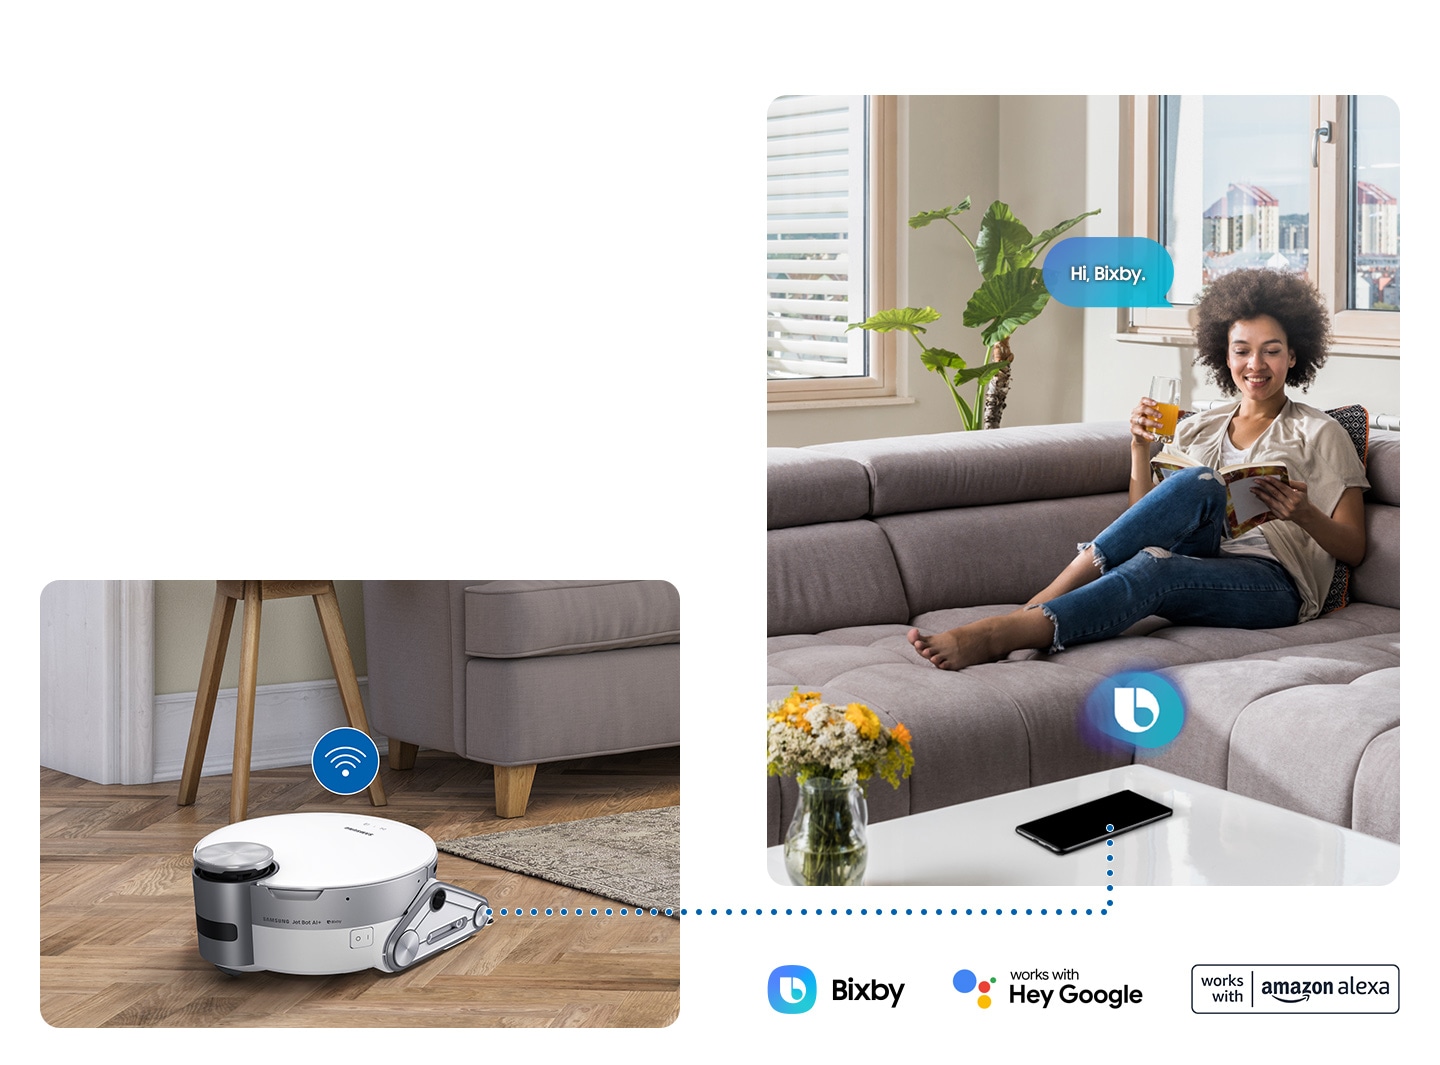  Con il riconoscimento vocale di Bixby, un utente dice a Jet Bot di pulire e può persino chiedere informazioni o controllare l'animale domestico .